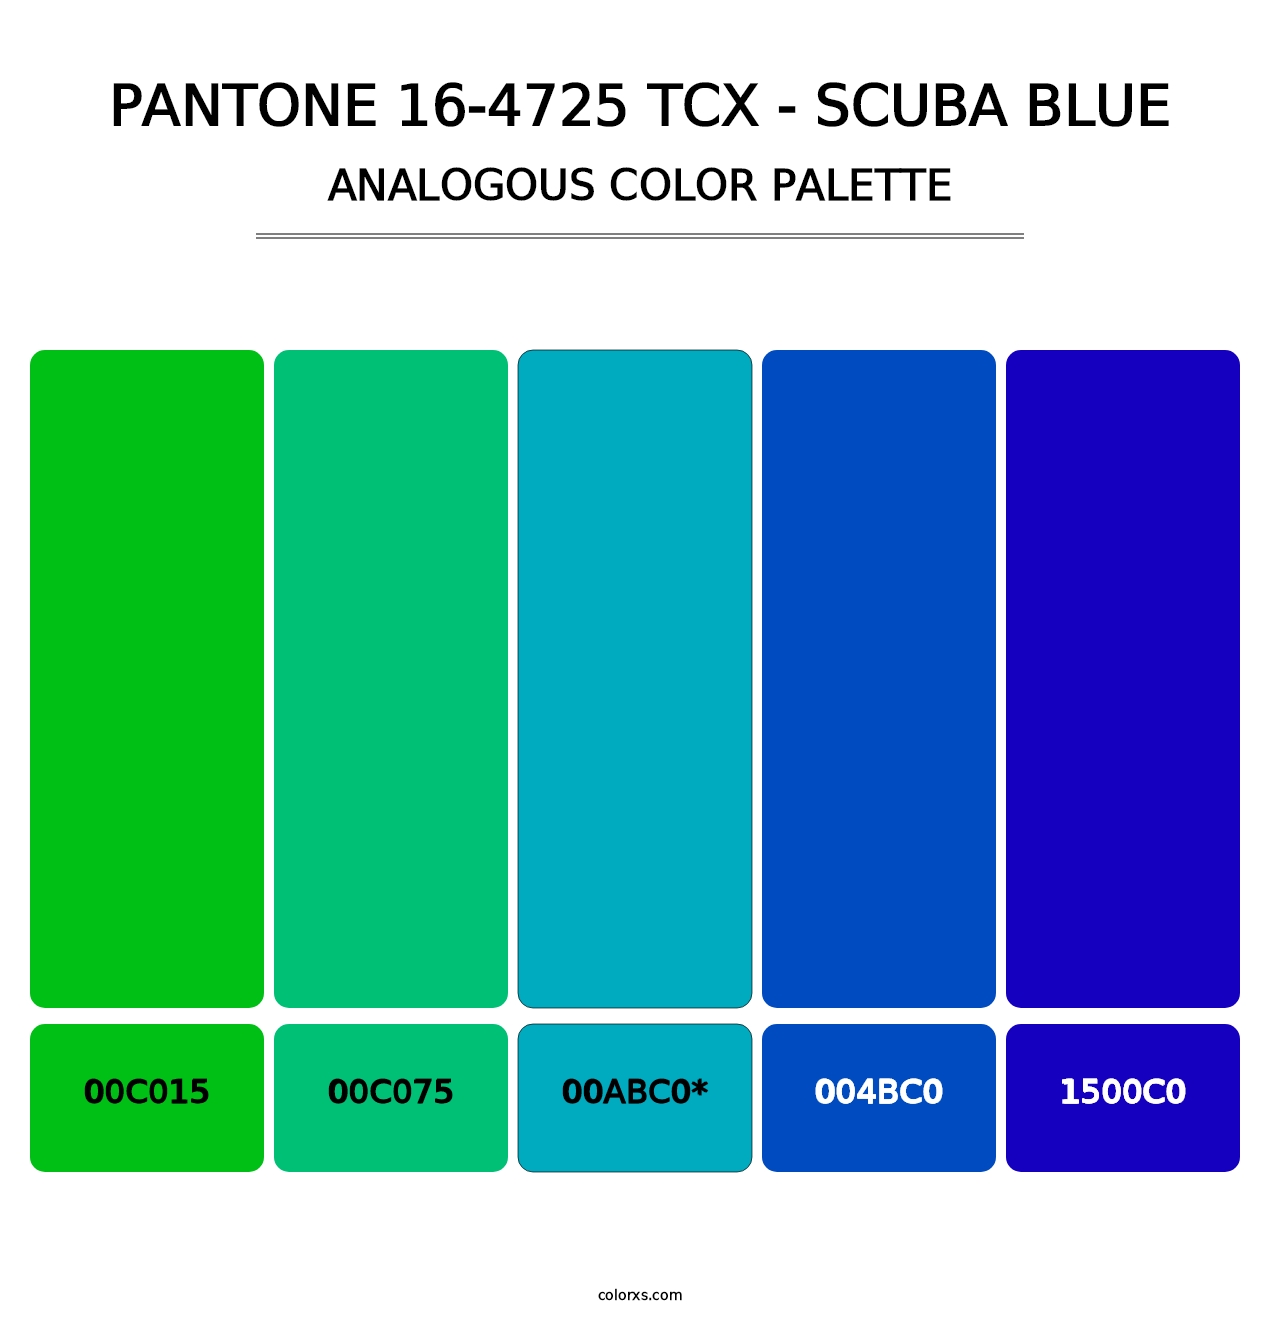 PANTONE 16-4725 TCX - Scuba Blue - Analogous Color Palette